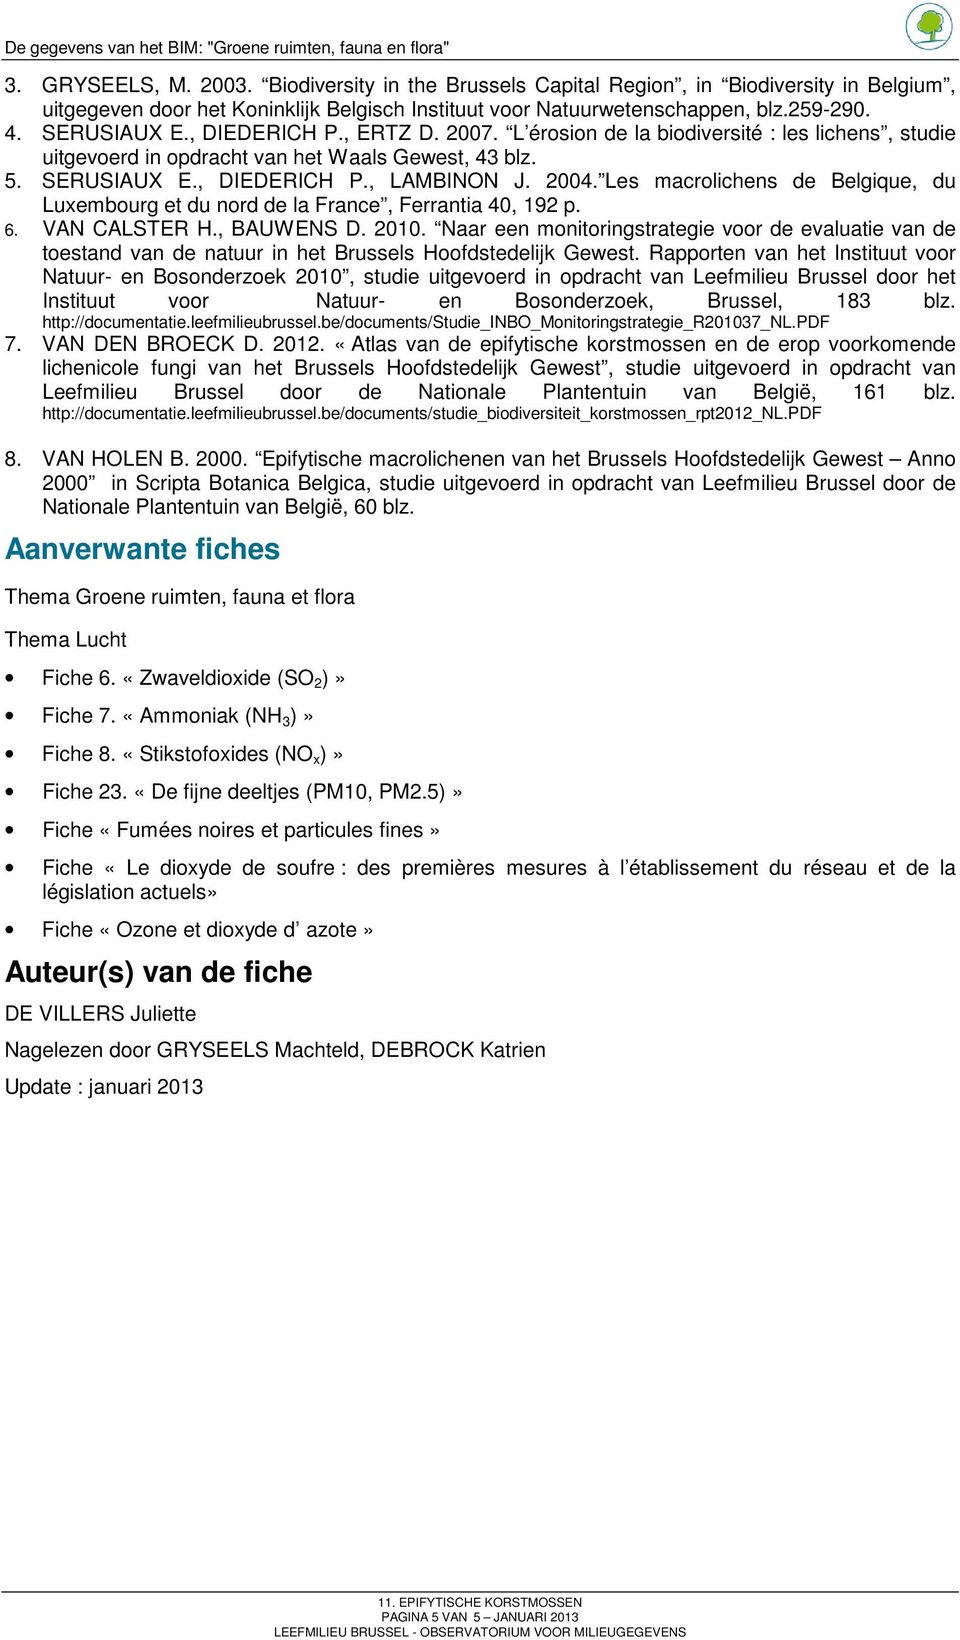 Les macrolichens de Belgique, du Luxembourg et du nord de la France, Ferrantia 40, 192 p. 6. VAN CALSTER H., BAUWENS D. 2010.